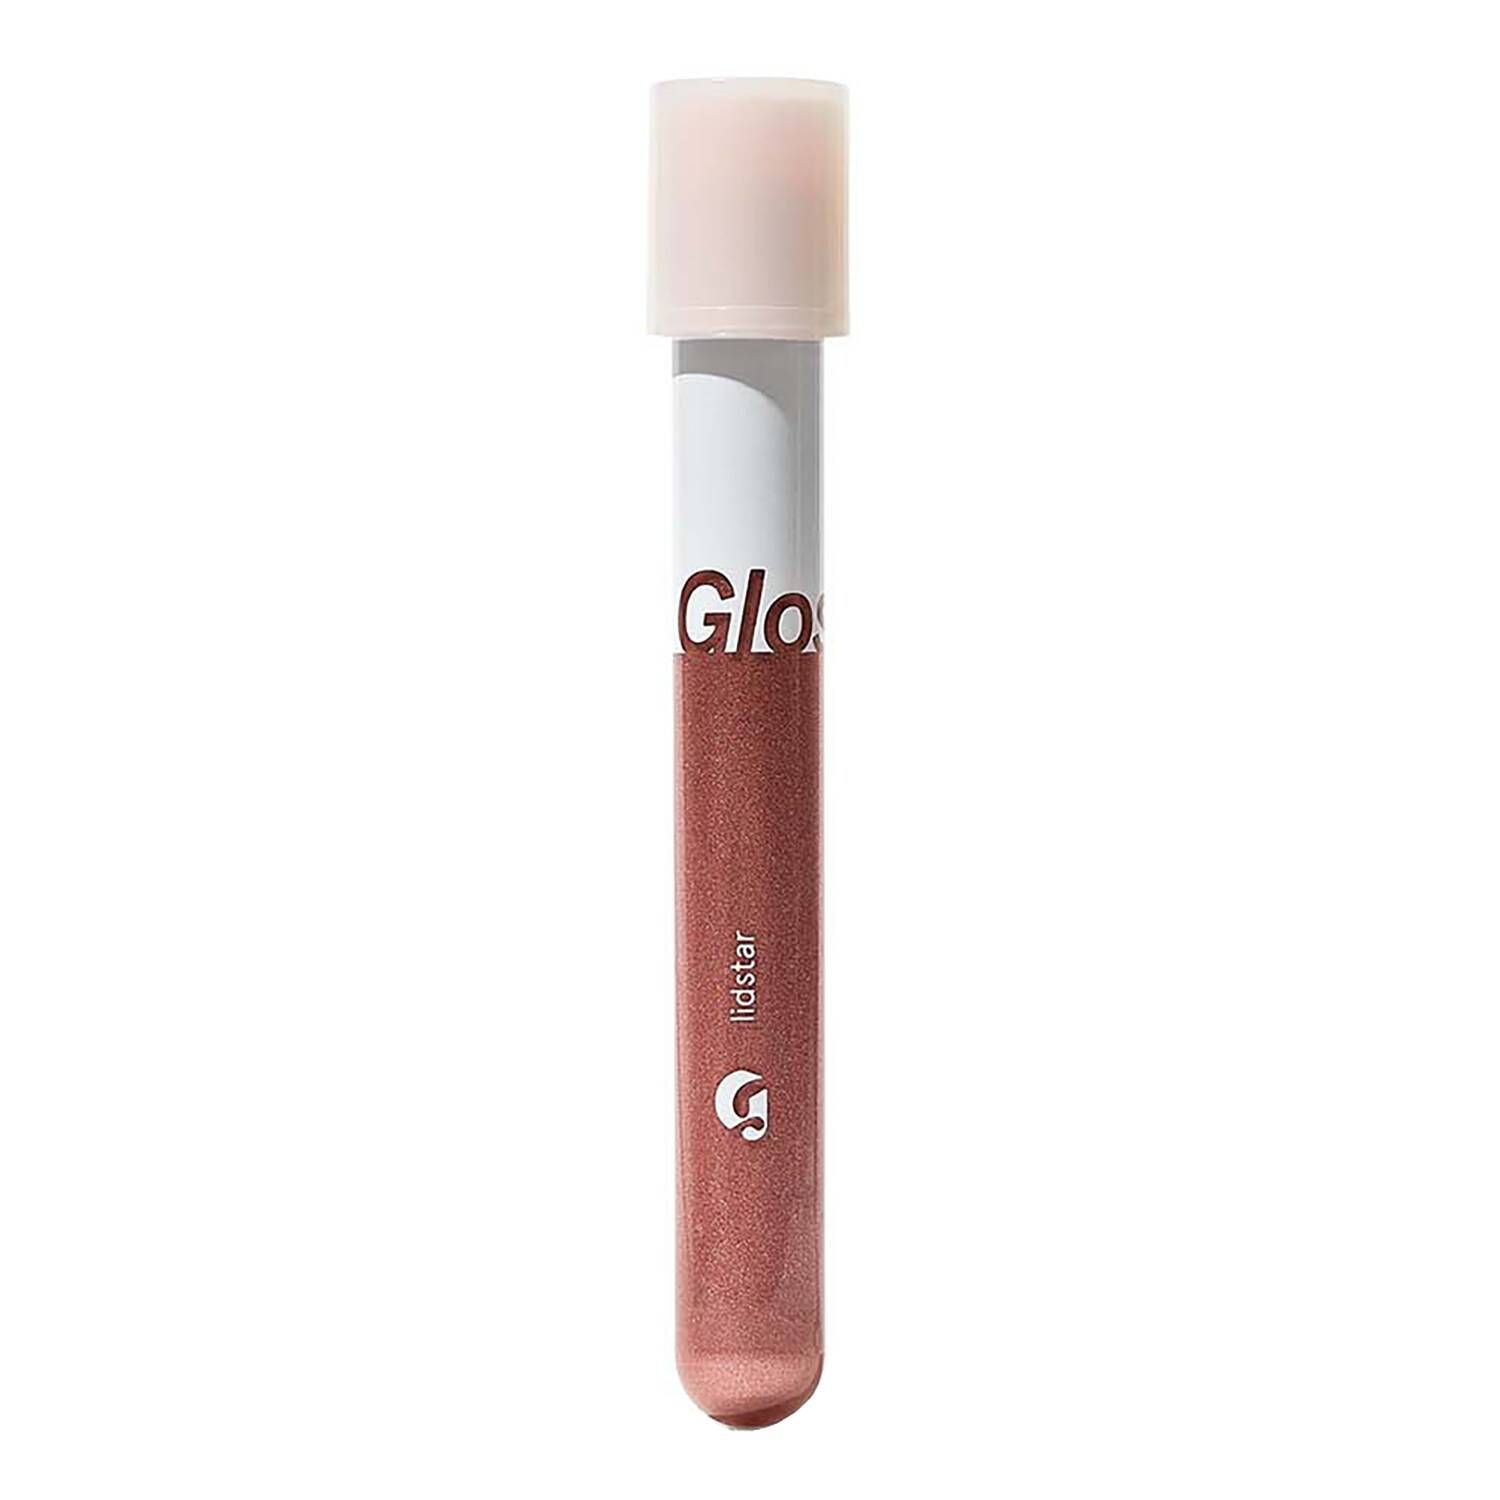 Glossier Lidstar Long-Wearing Shimmer Cream Eyeshadow 4.5Ml Cub